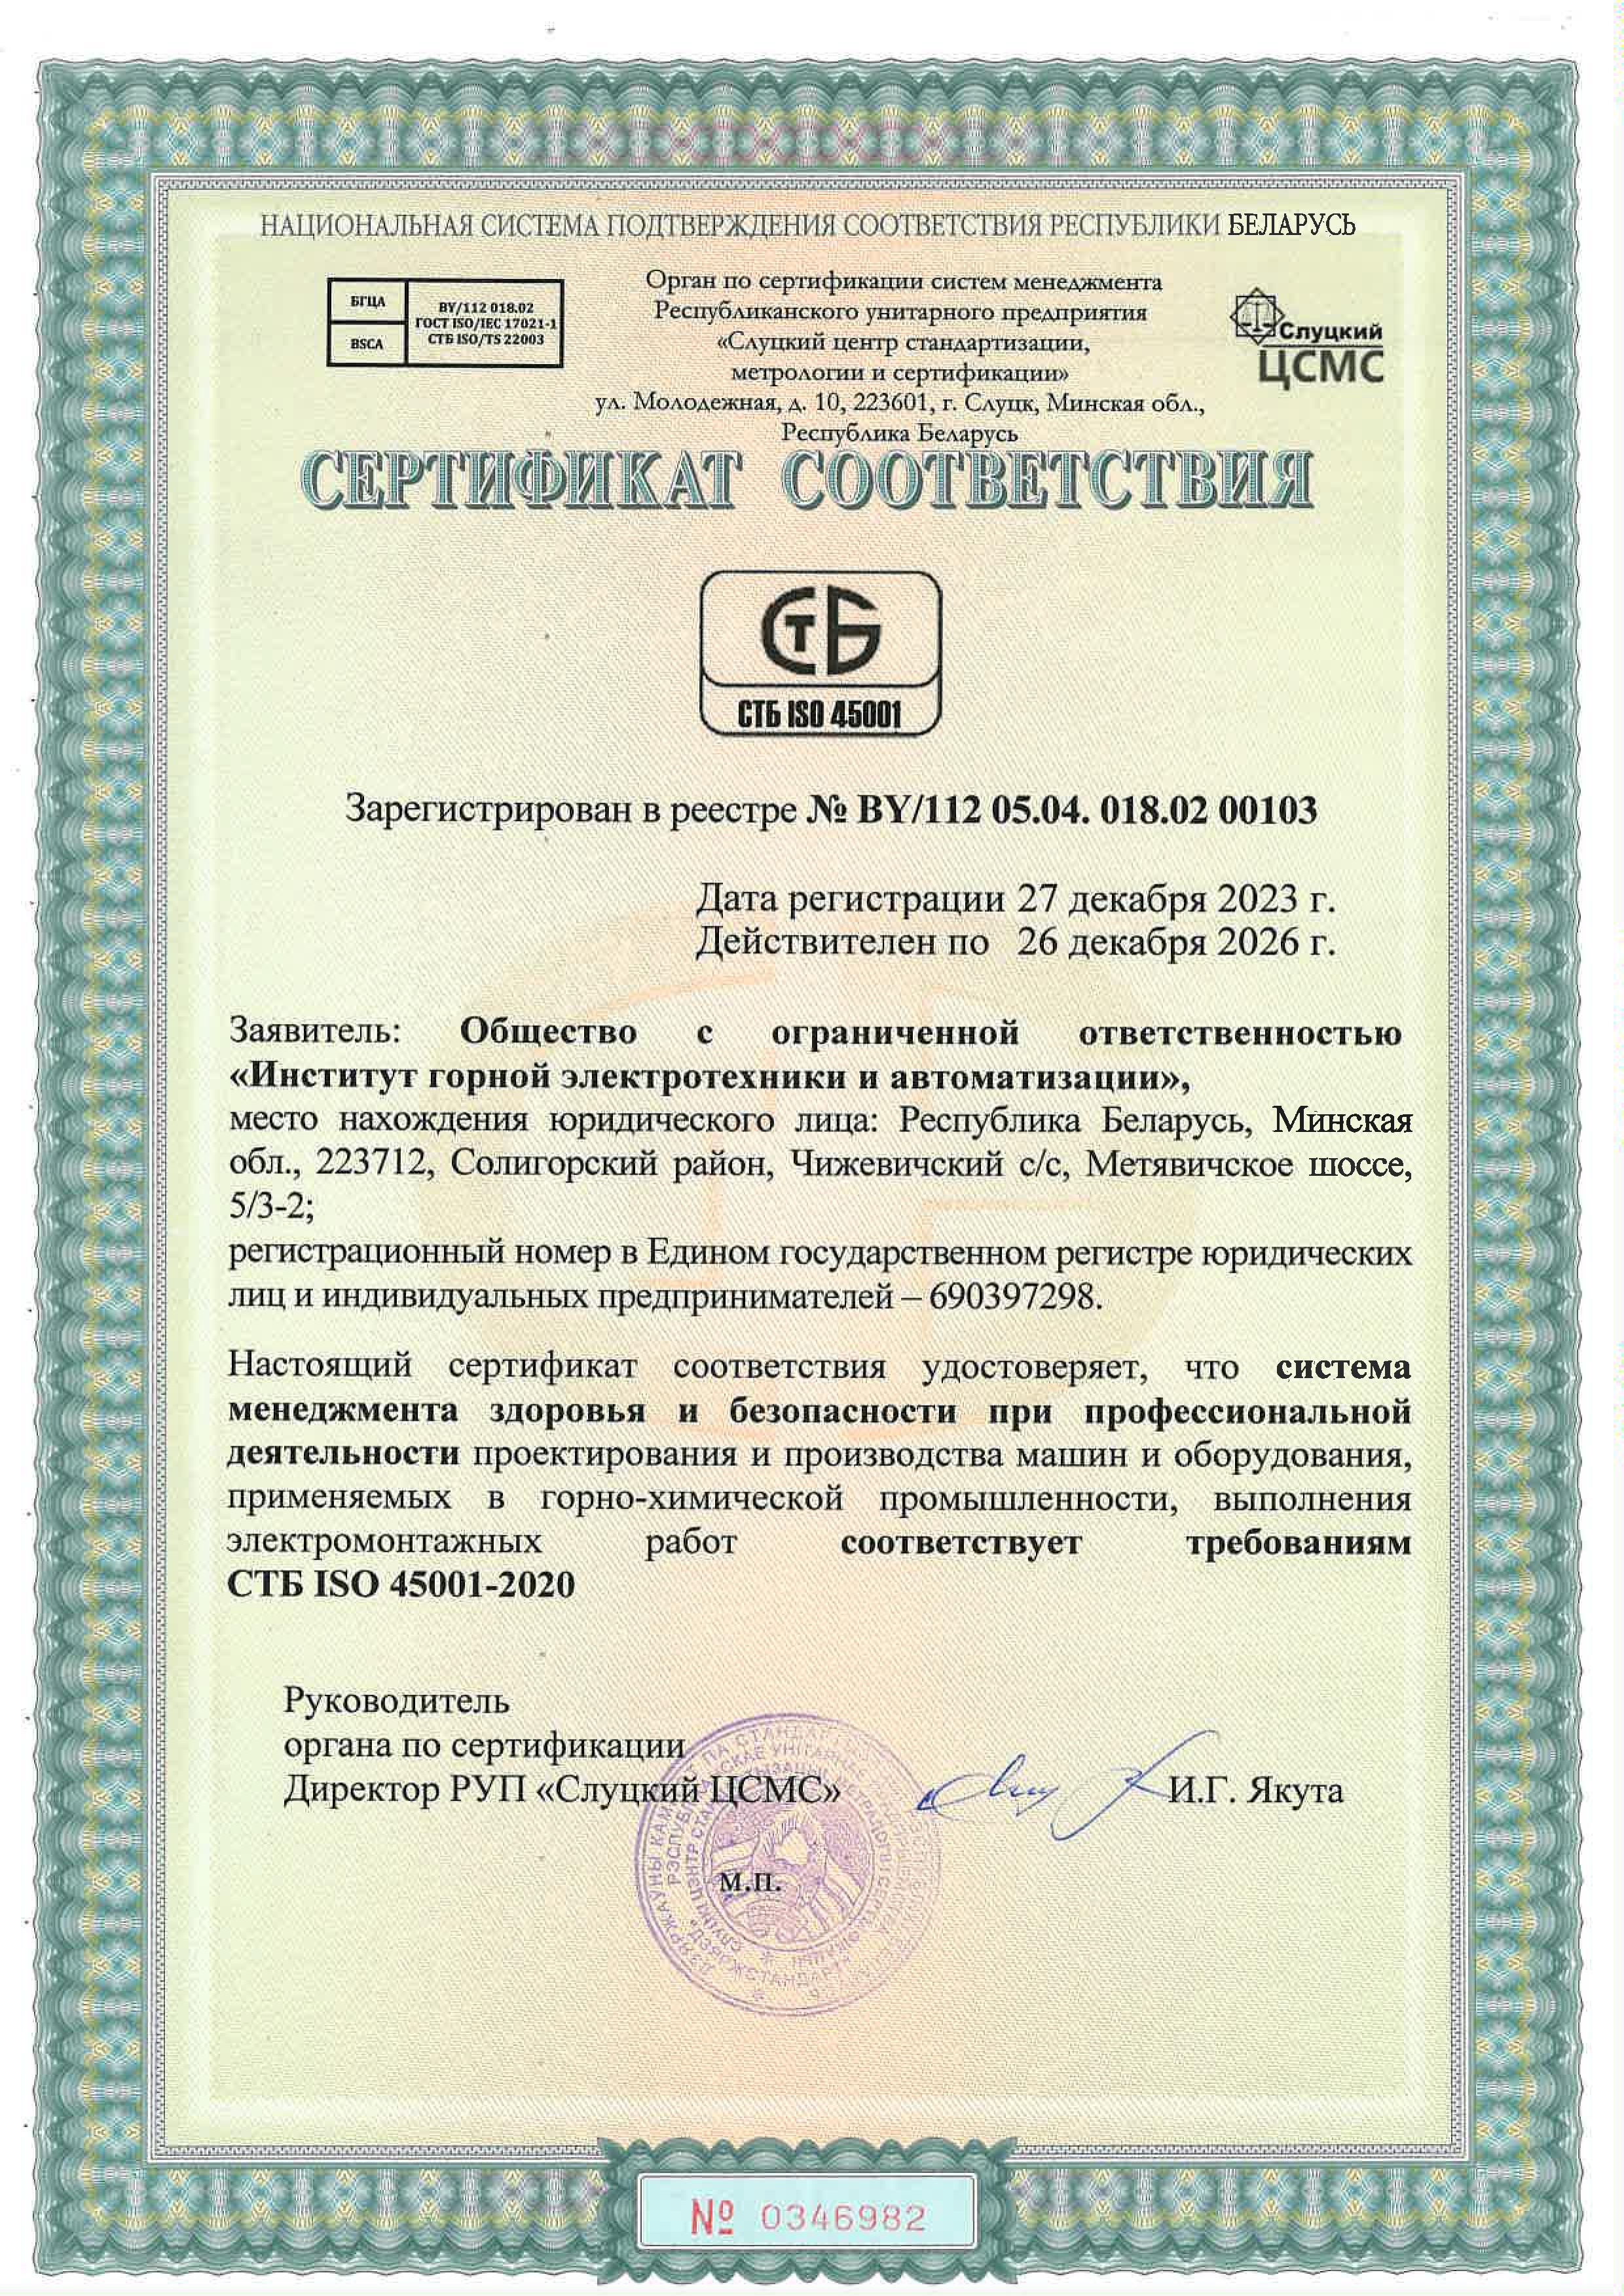 Сертификат соответствия системы менеджмента здоровья и безопасности при профессиональной деятельности СТБ ISO 45001-2020 №BY/112 05.04. 018.02 00103